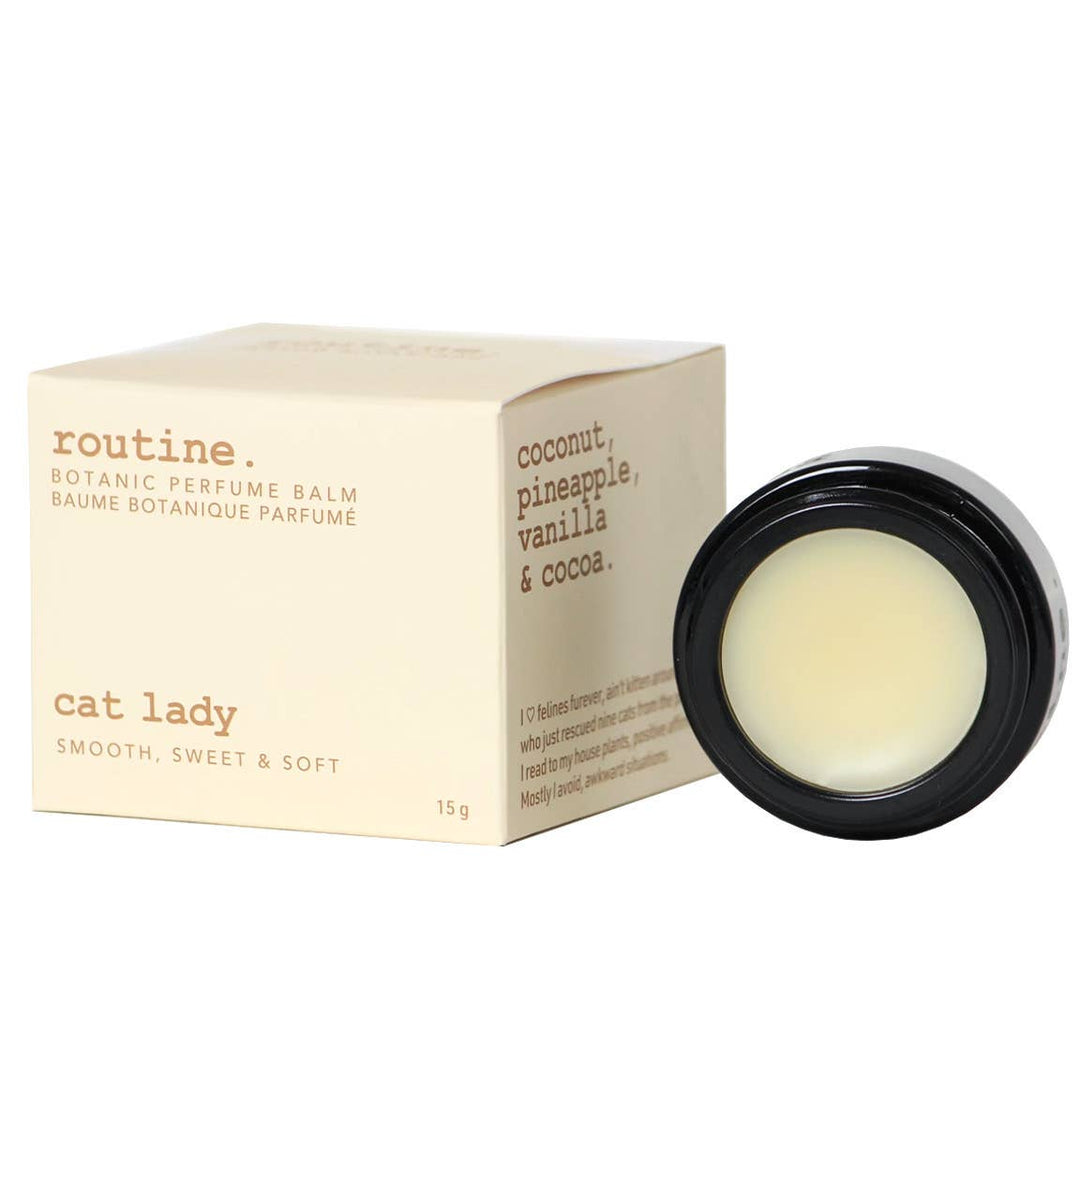 Cat Lady Botanic Perfume Balm - 15g